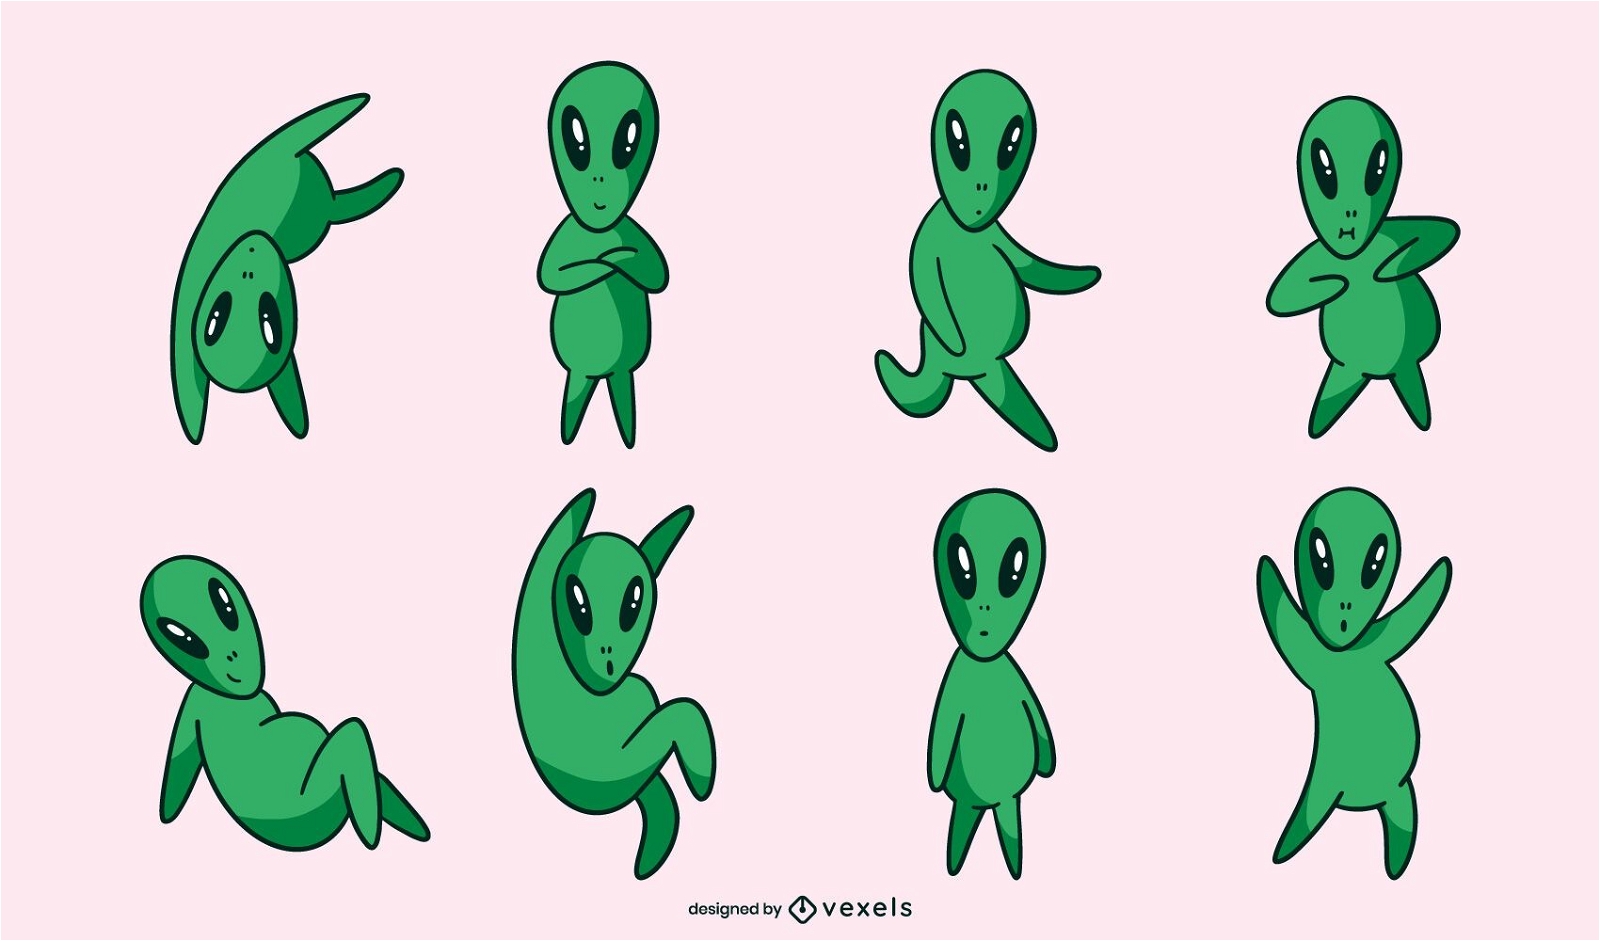 Conjunto de poses de personaje alien?gena verde lindo